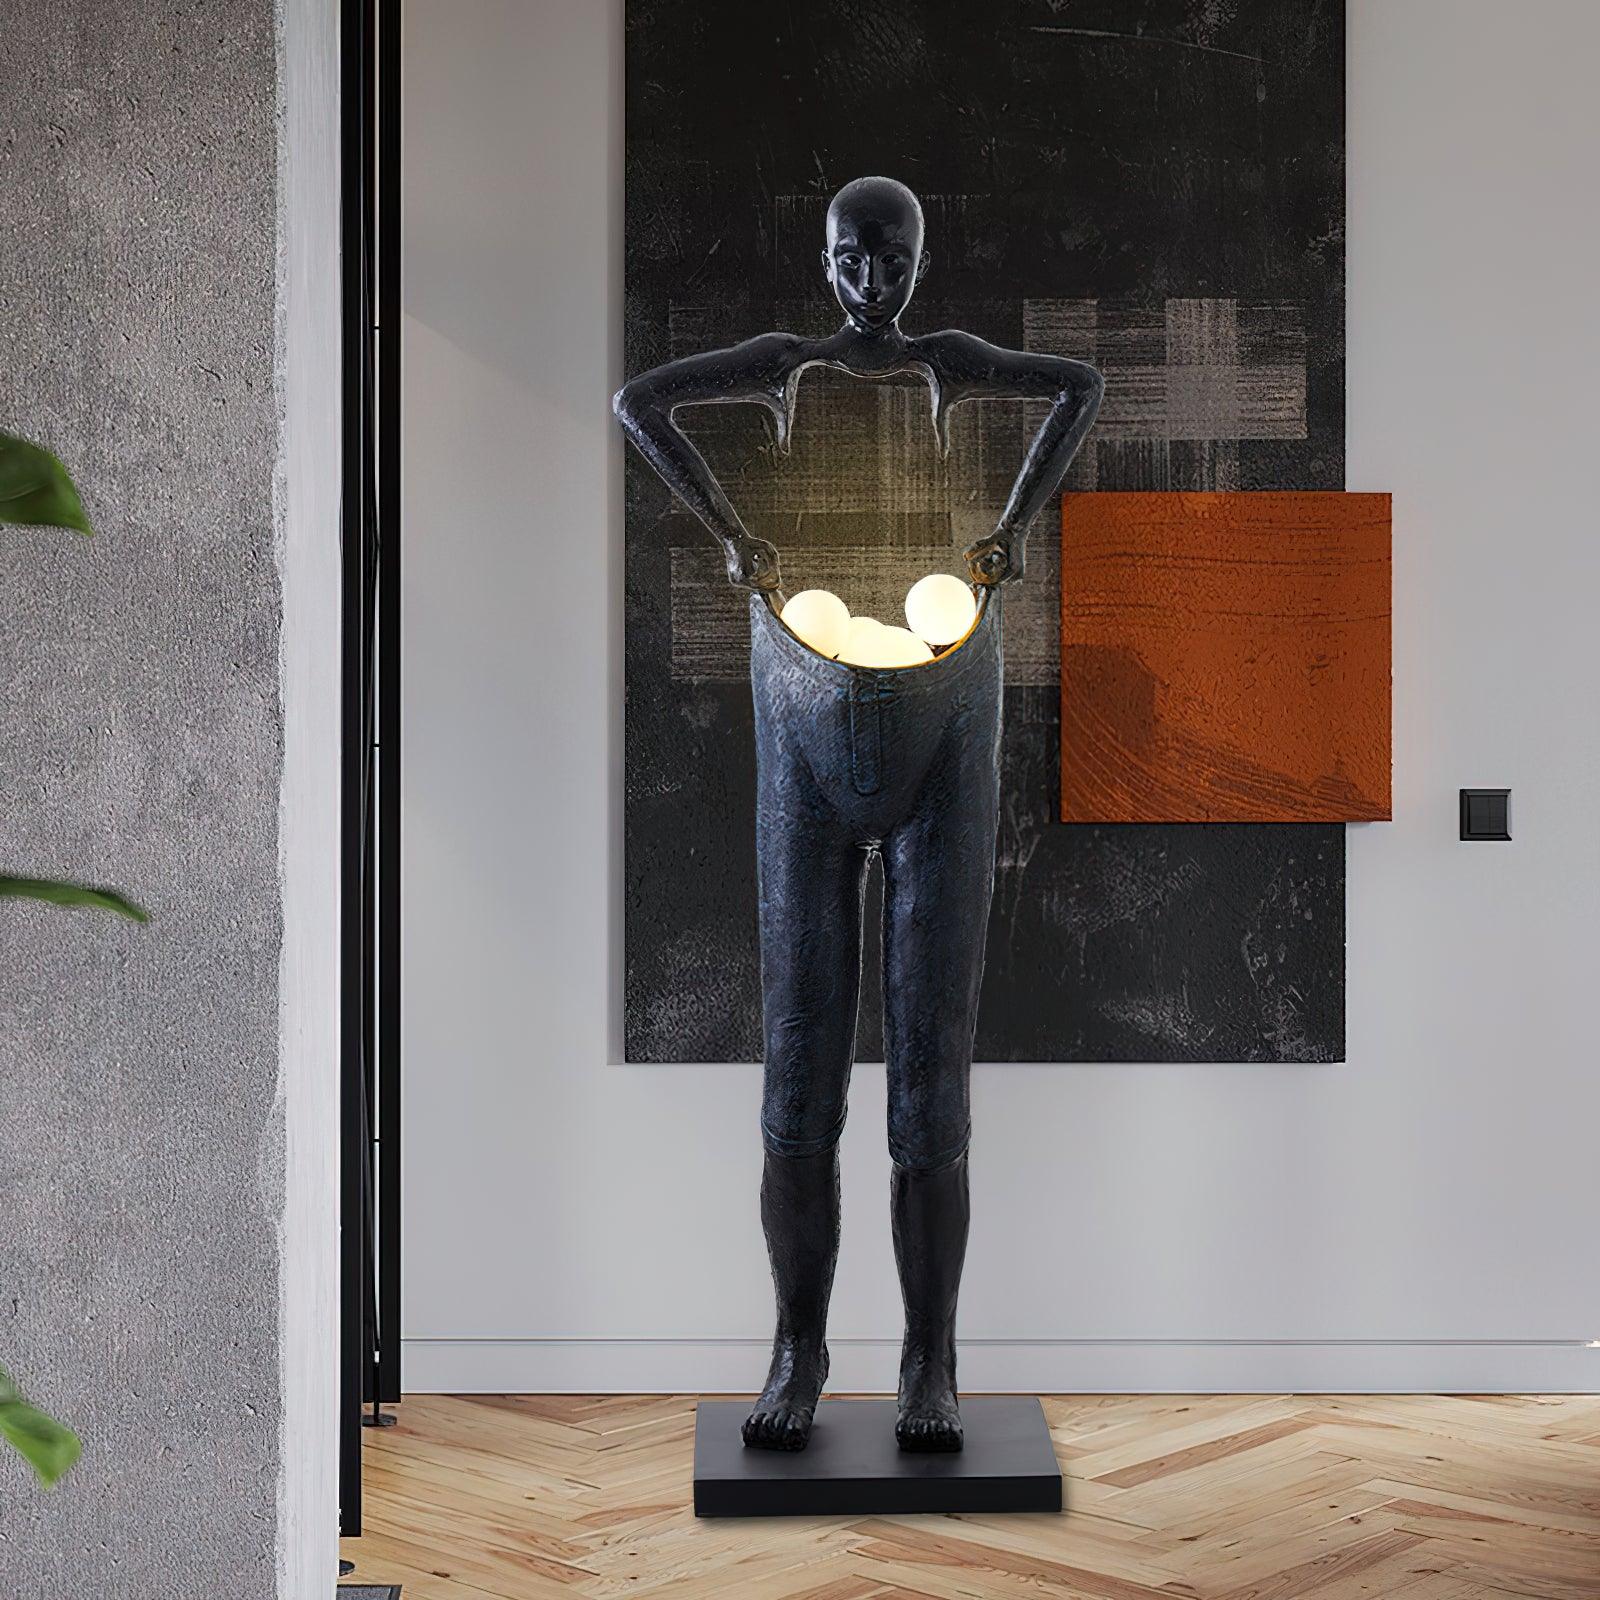 Docos Floor Lamp Exploring the Human Figure Sculpture Series - Docos